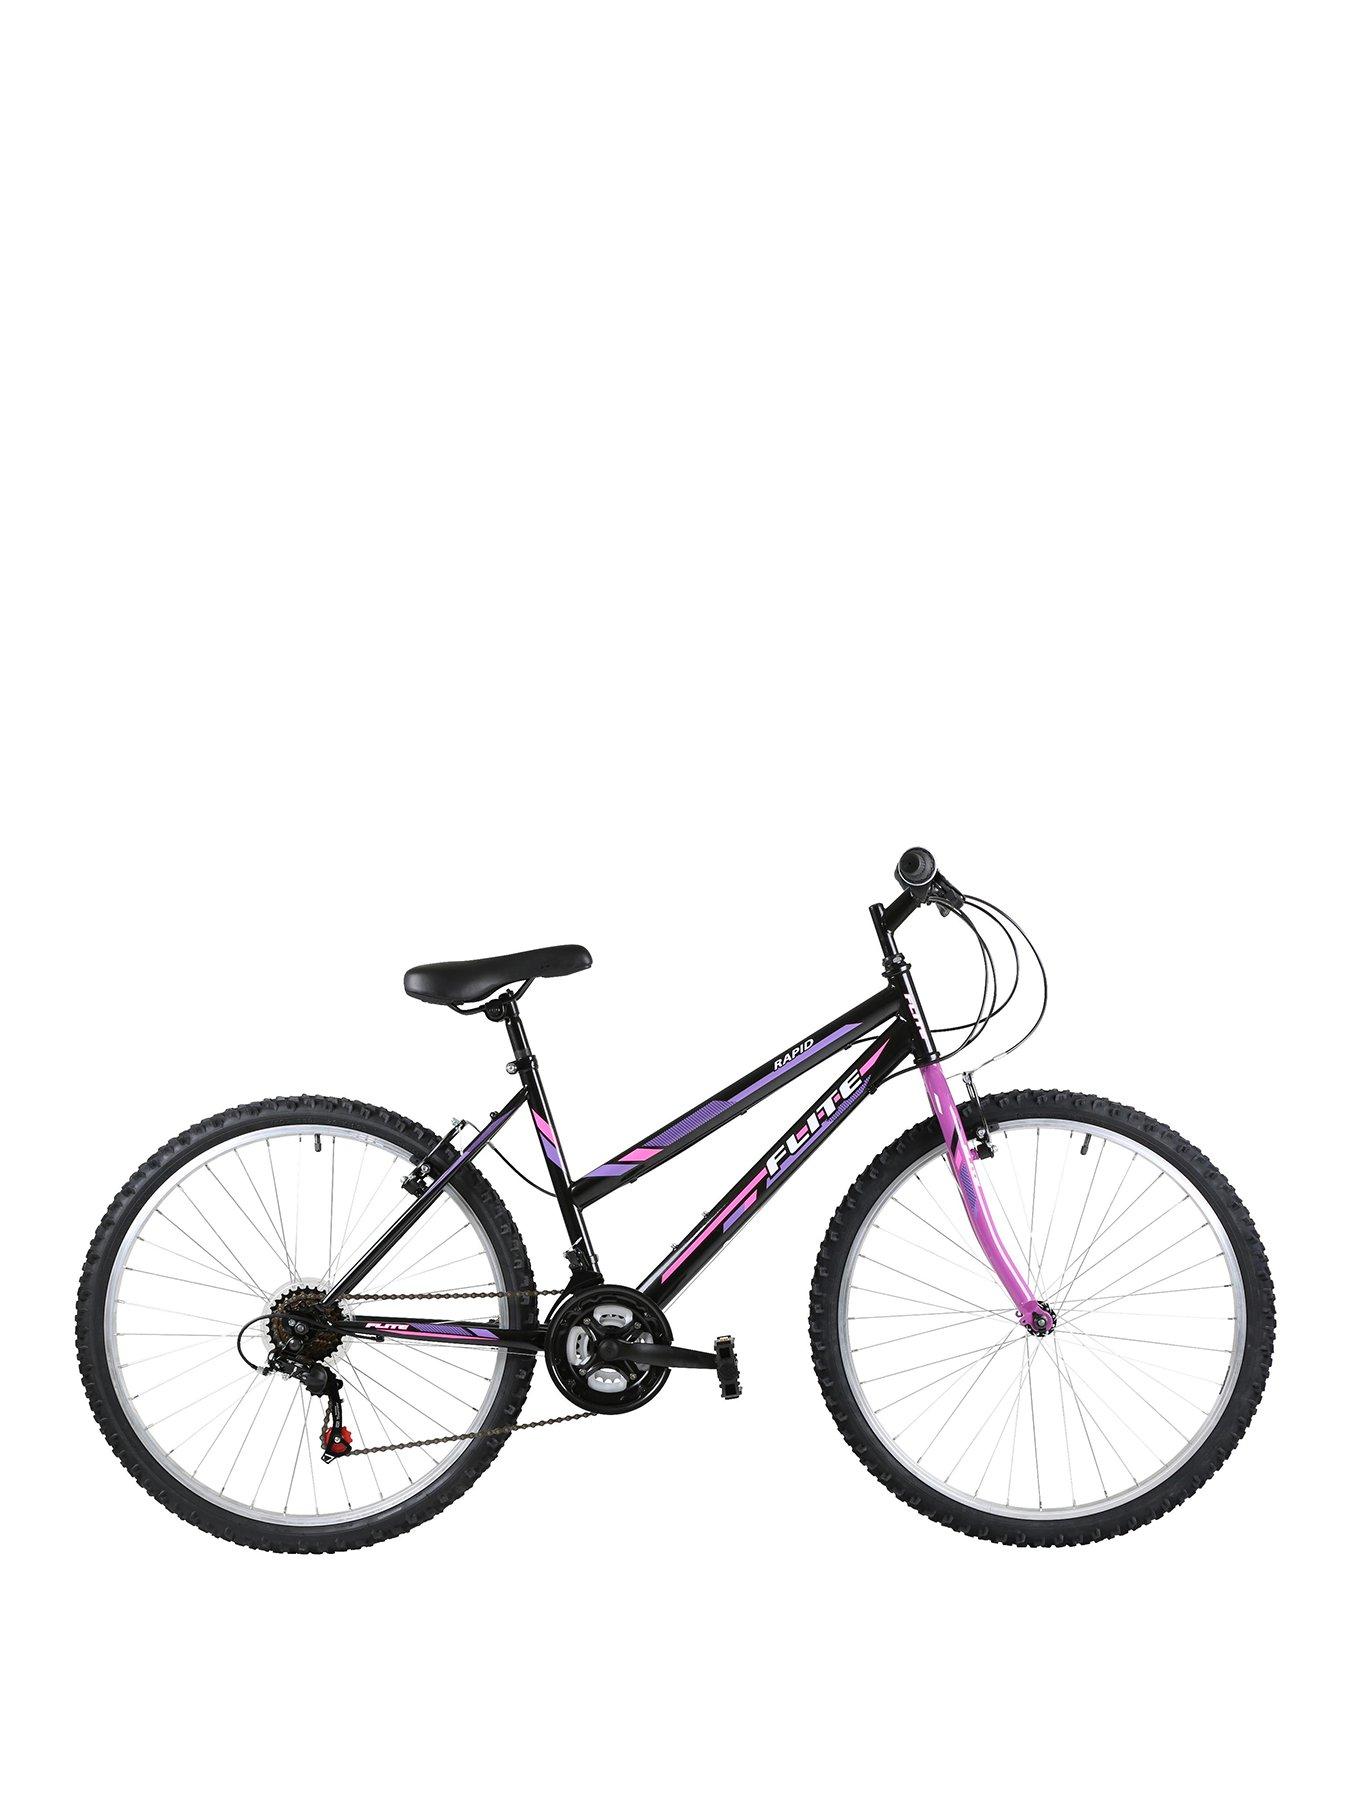 women's 17 inch bike